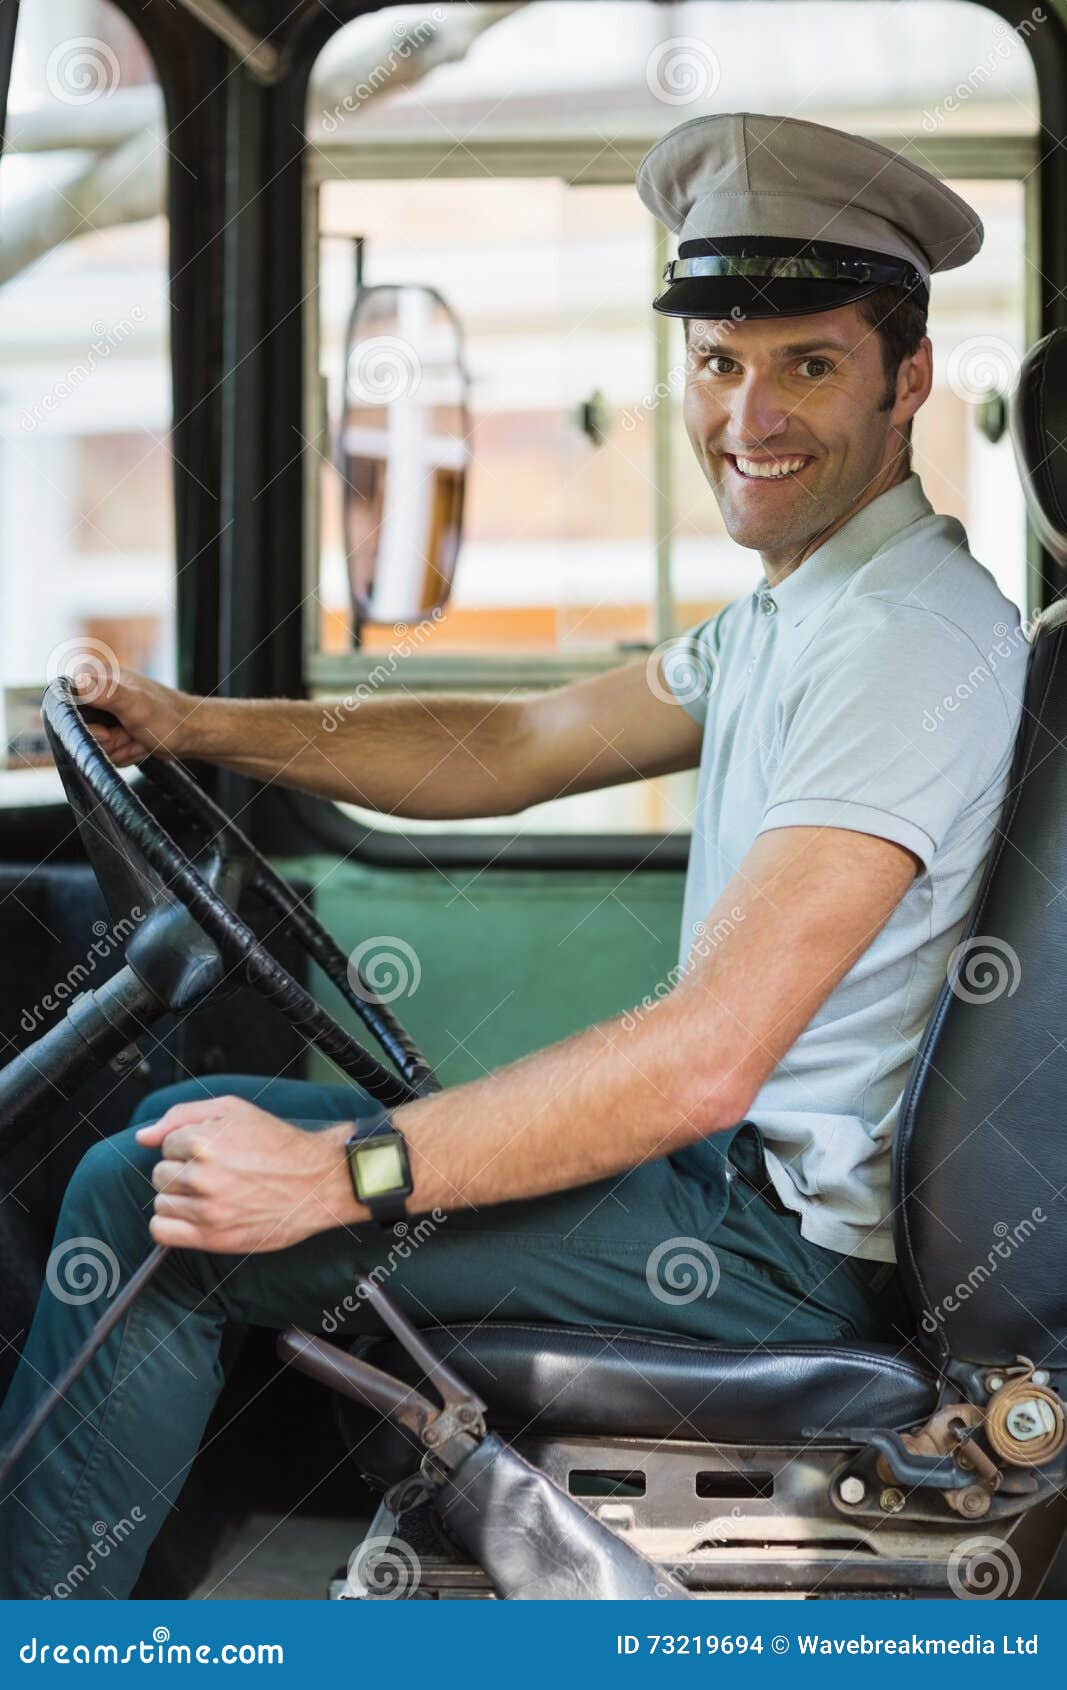 Водитель автобуса рабочий день. Профессия водитель автобуса. Шофер. Шофёр профессиональный. Водитель автобуса улыбается.